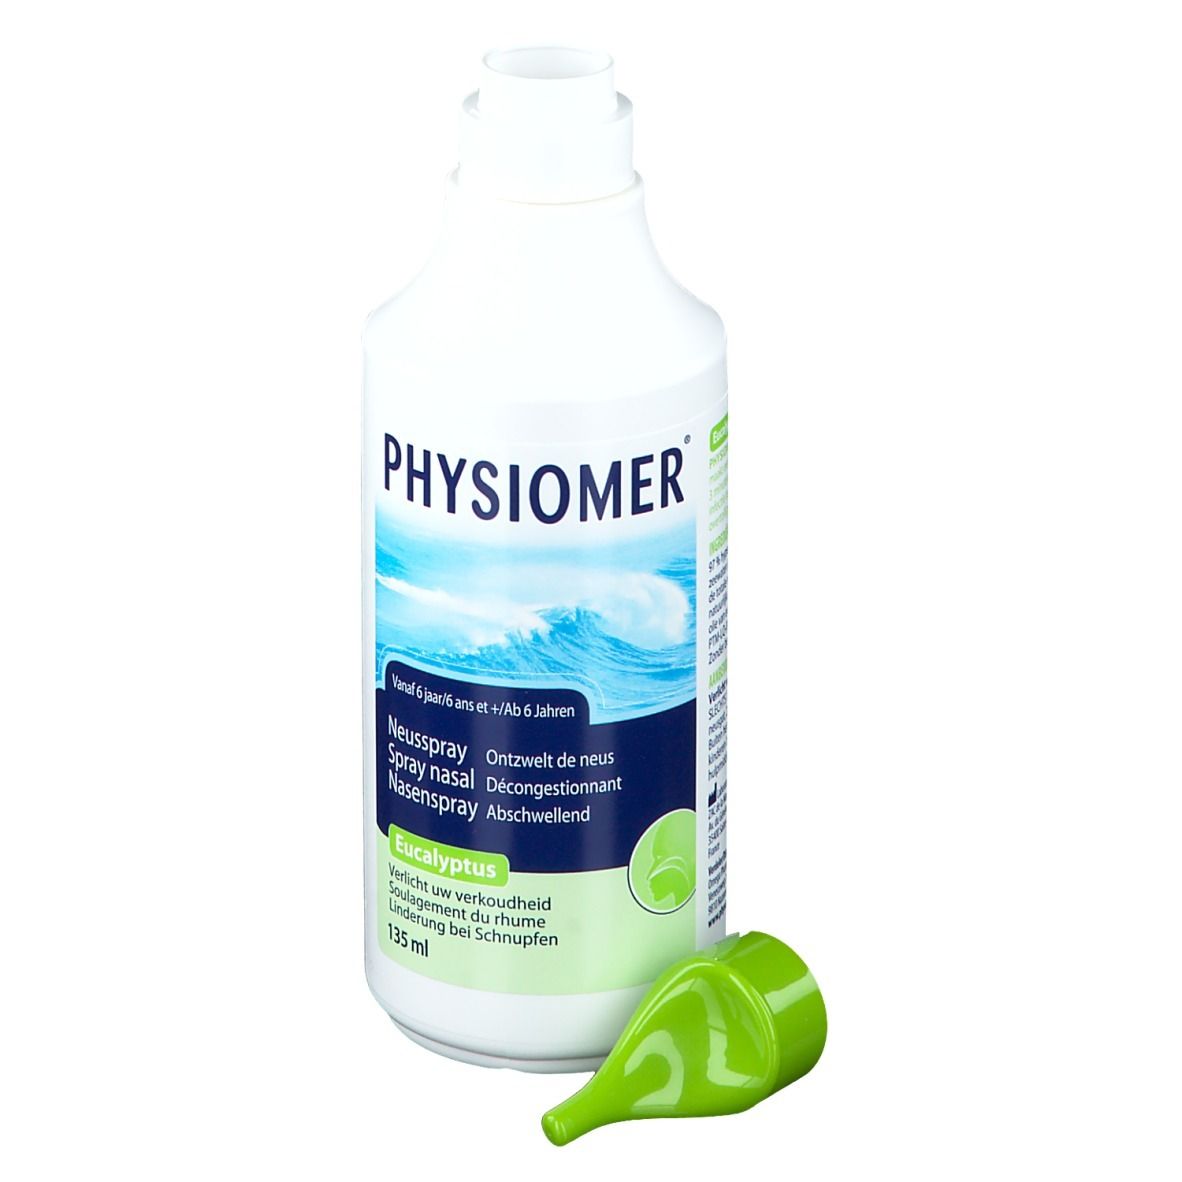 Physiomer Eucalyptus Spray Nasal